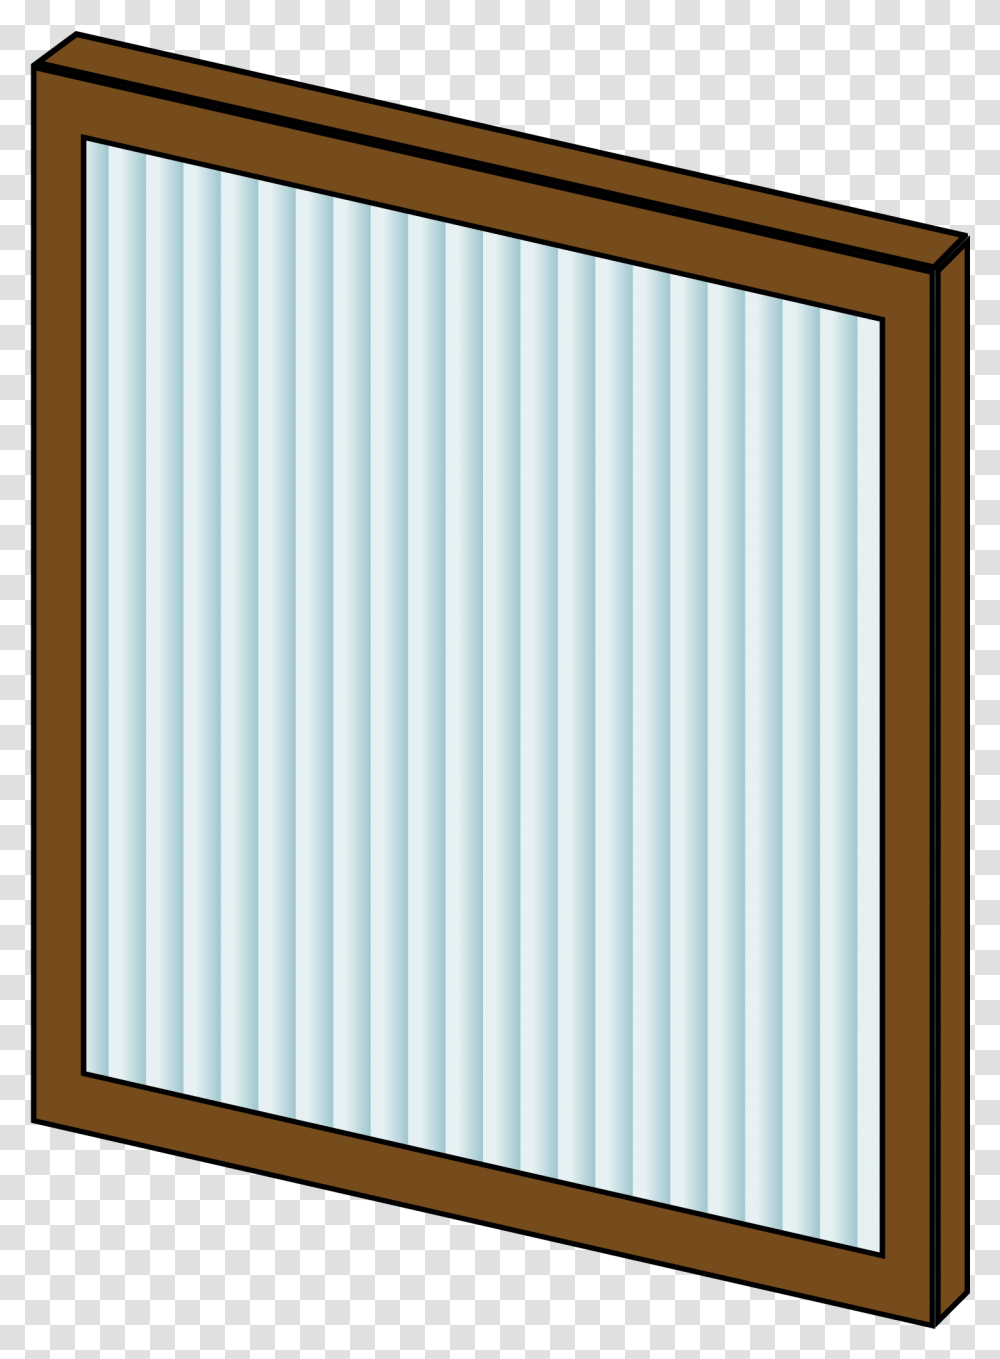 Furnace Filter Clip Arts Furnace Filter Clip Art, Door, Home Decor, Window, Rug Transparent Png